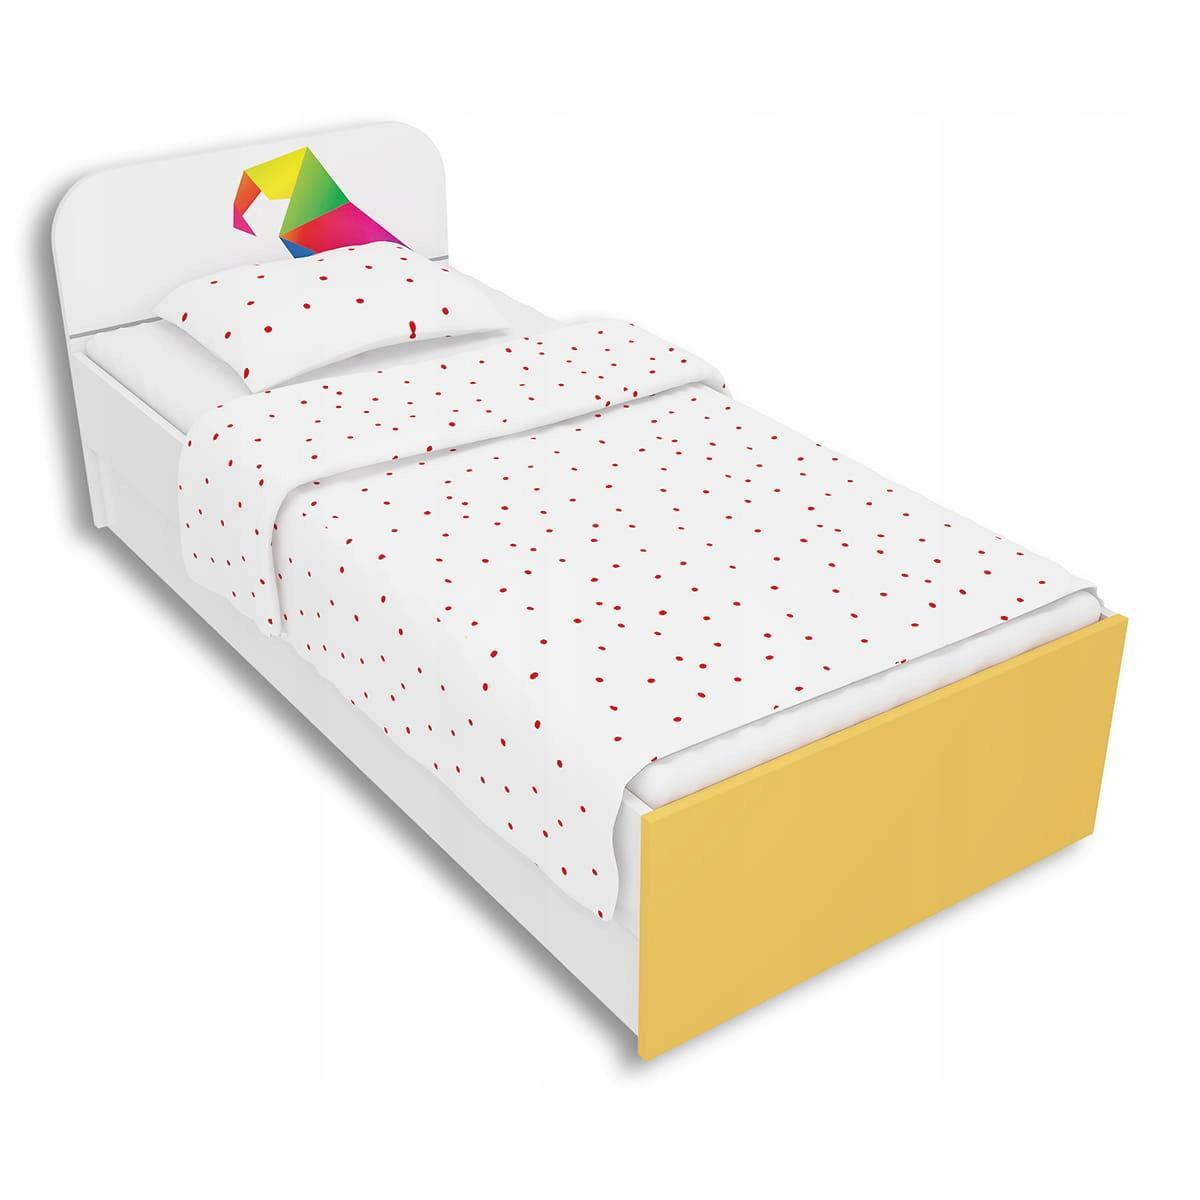 Łóżko ARA 90x200 żółte kolorowa papuga origami dla dziecka  0 Full Screen